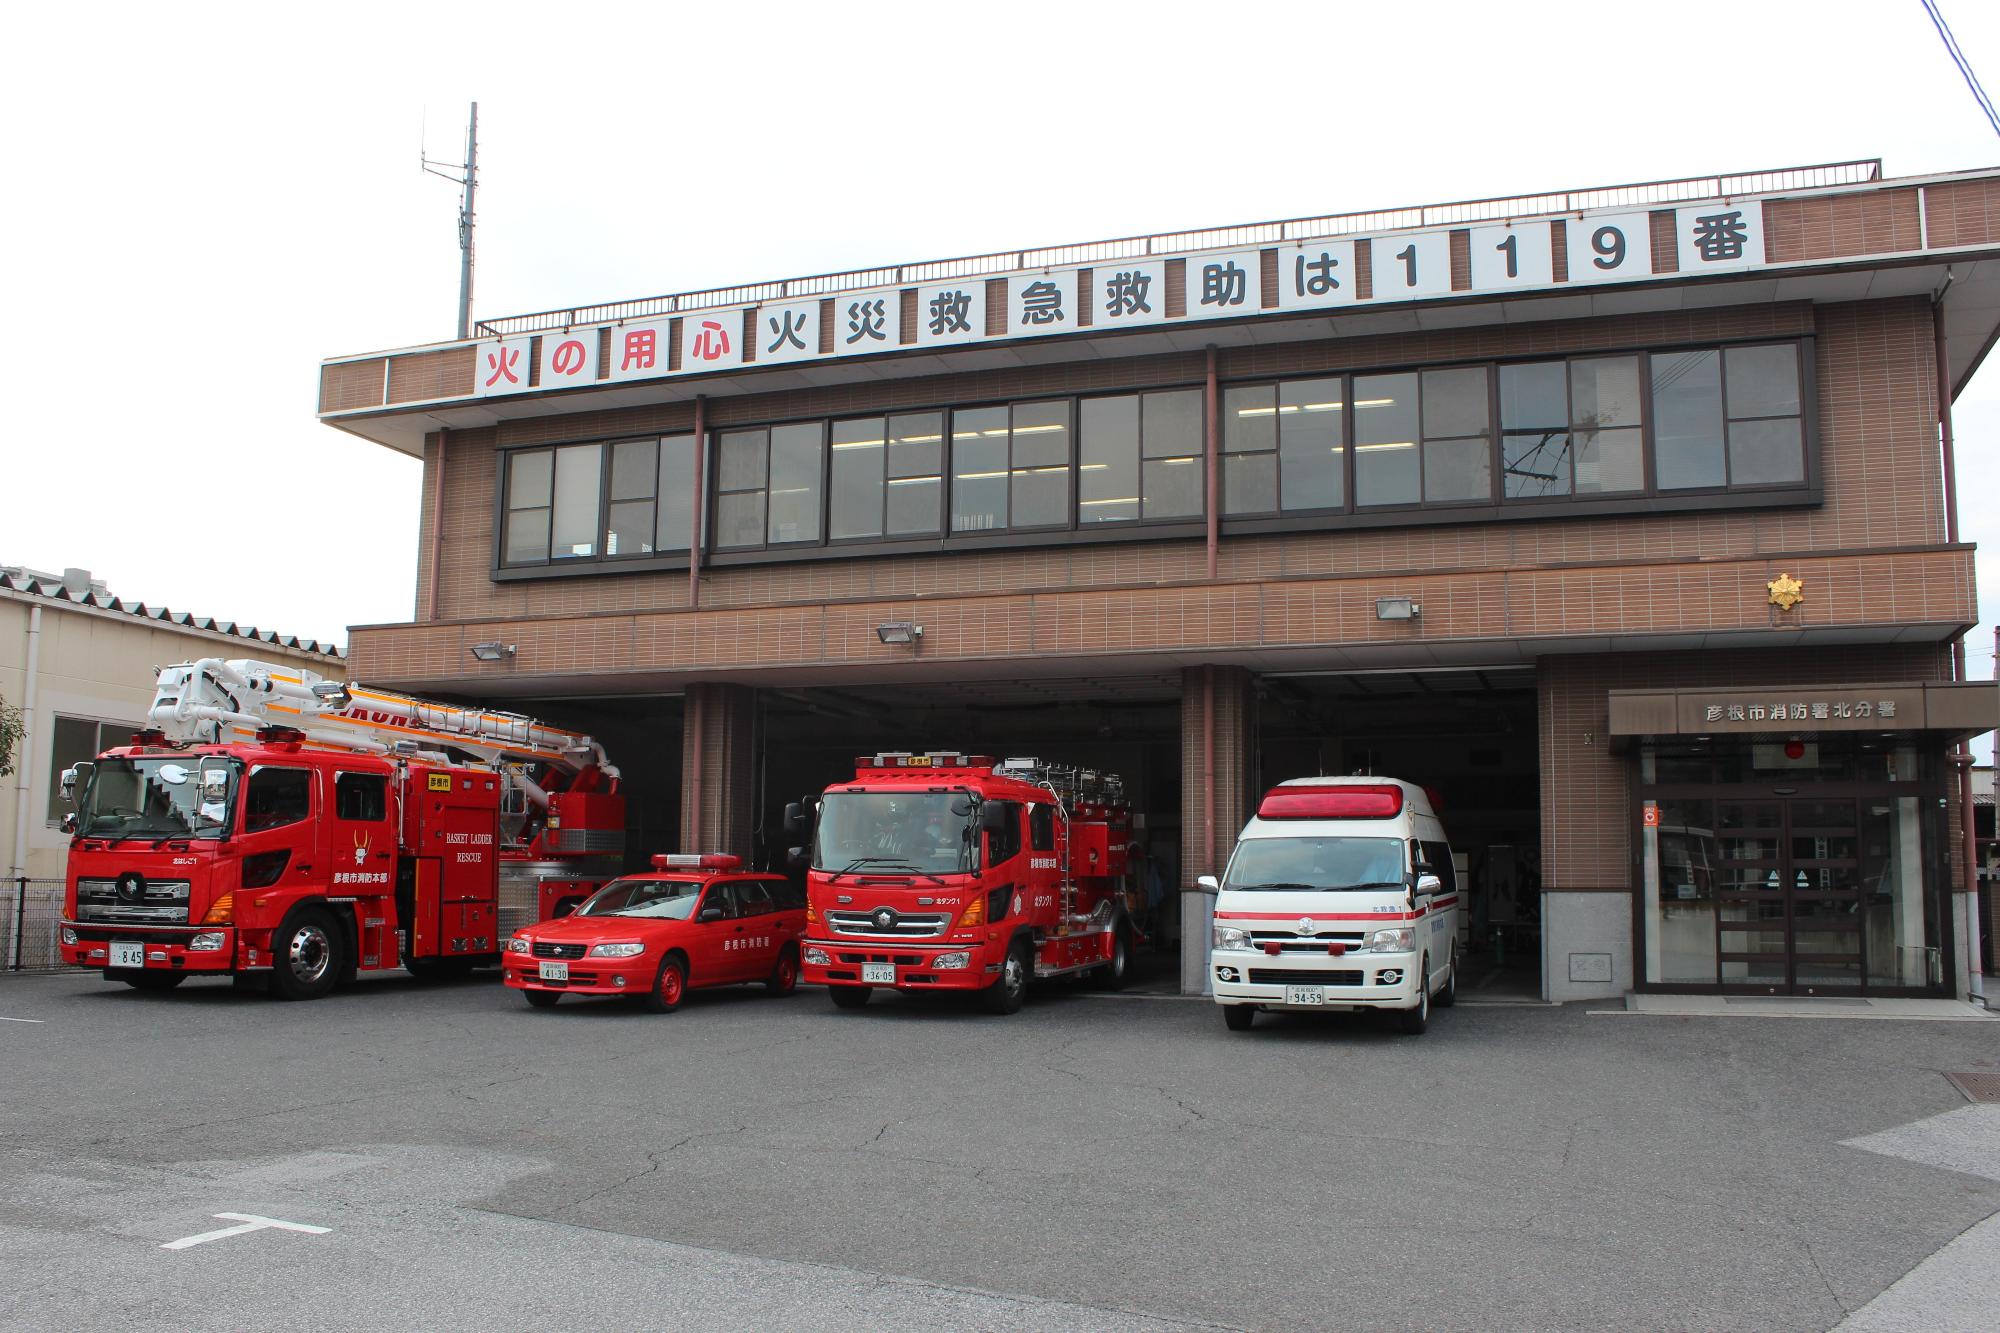 北分署の建物と消防車と救急車の写真